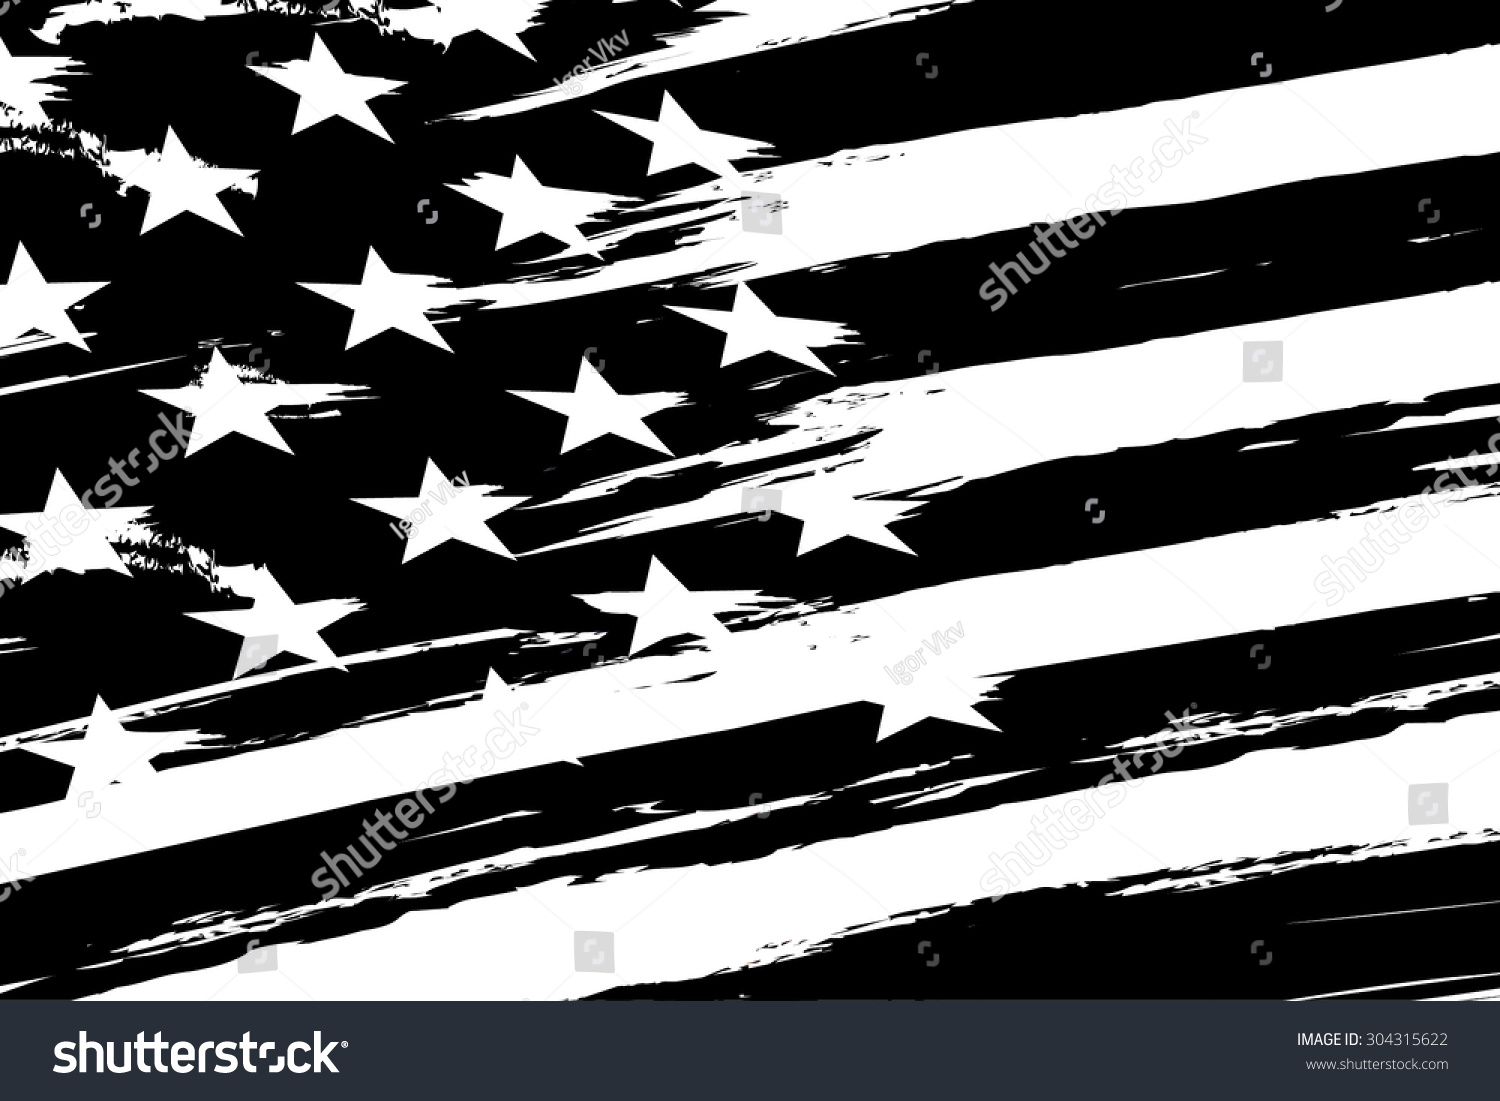 usa flag clipart black and white - photo #46